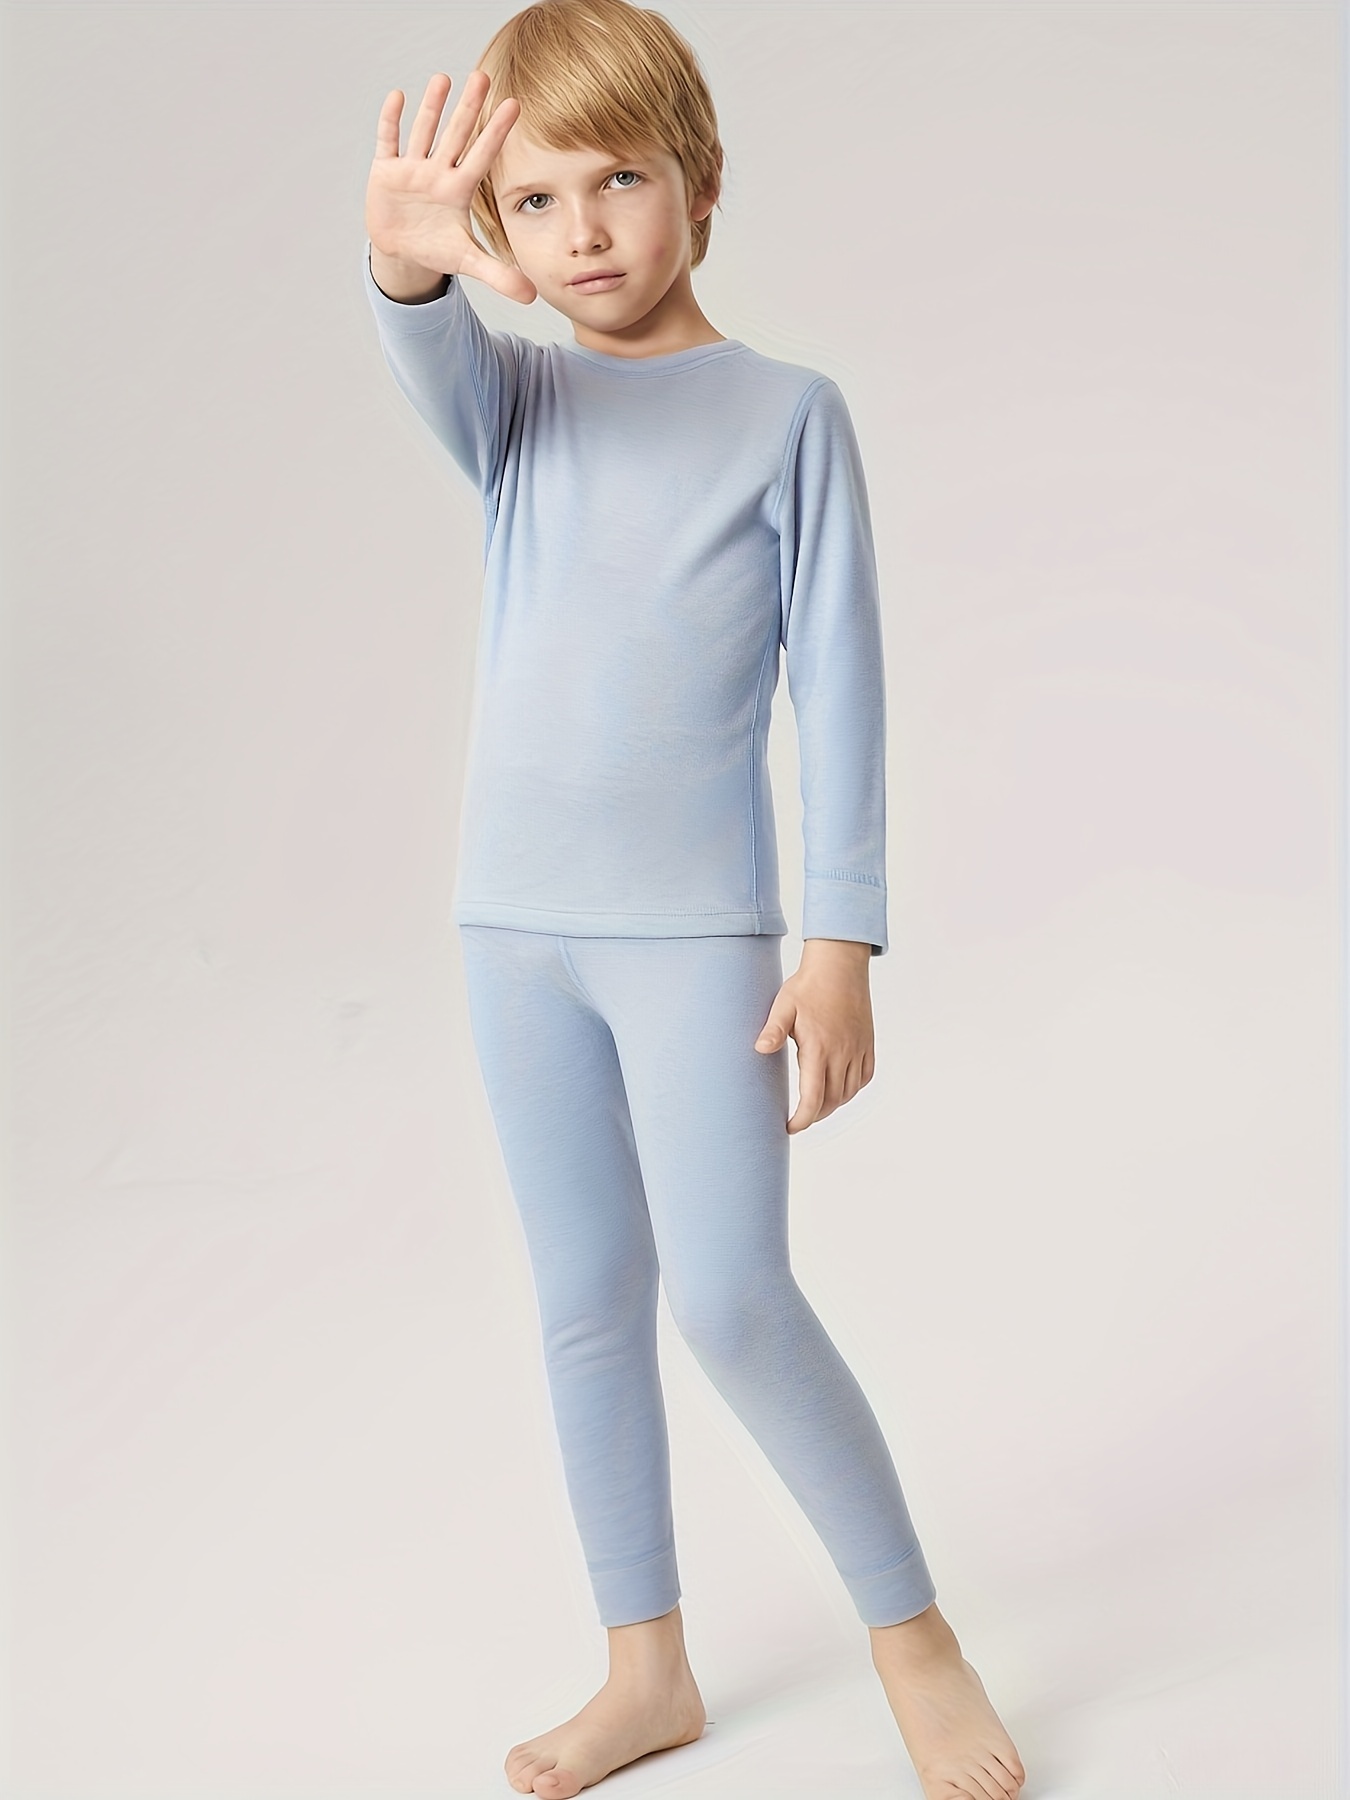 Comprar pijamas para niño de invierno de algodón 🙂 A punto